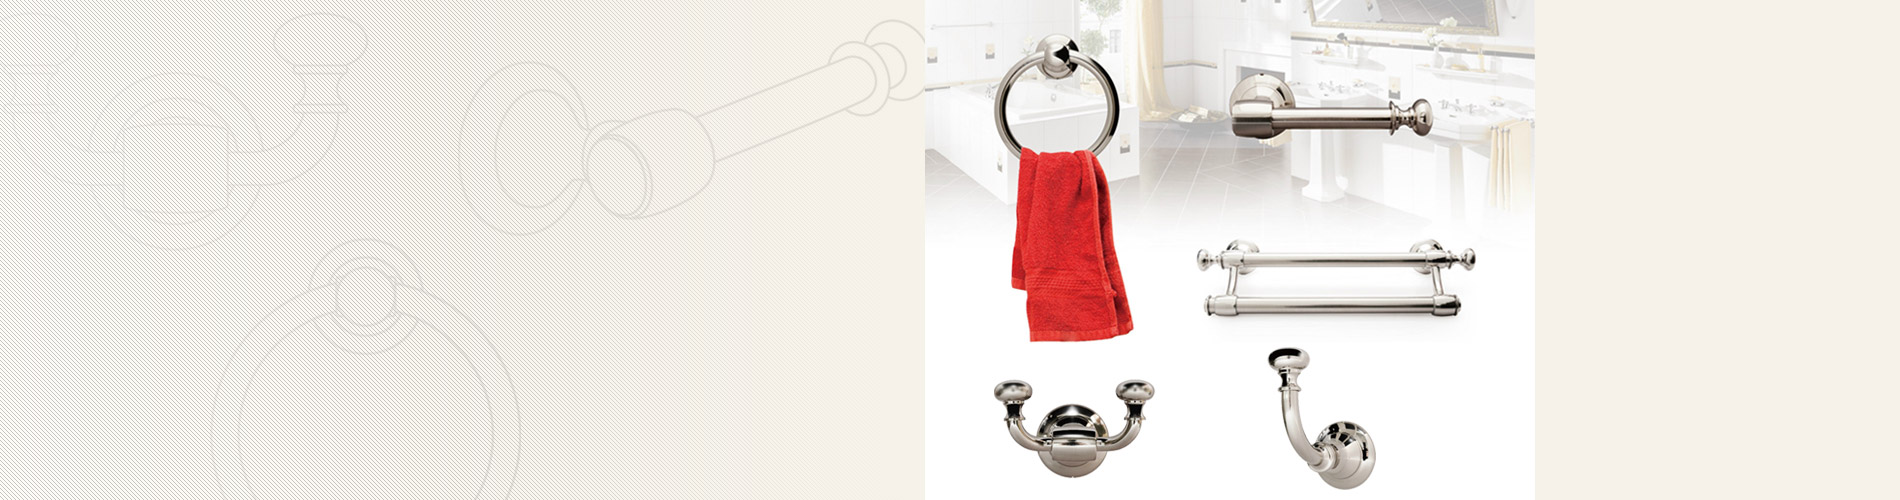 Оборудование для ванной комнаты Наша фурнитура для ванной комнаты включает в себя одинарную/двойную вешалку для полотенец, кольцо для полотенец, держатель для салфеток и крючки для одежды.